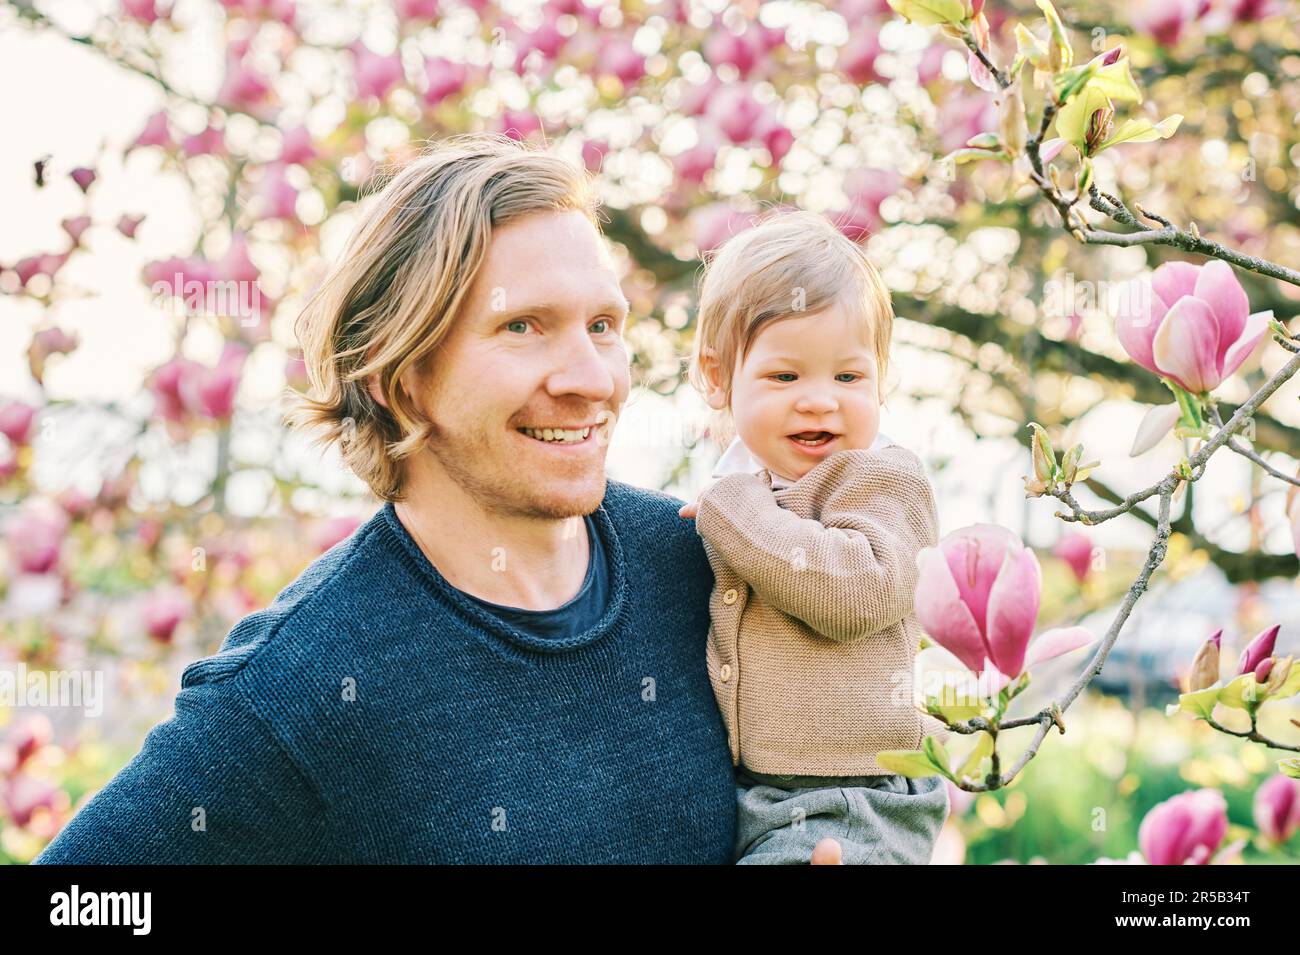 Außenporträt eines glücklichen jungen Vaters, der im Frühlingspark mit einem niedlichen Kleinkind spielt und sich wunderschöne blühende Magnolienblüten anschaut Stockfoto